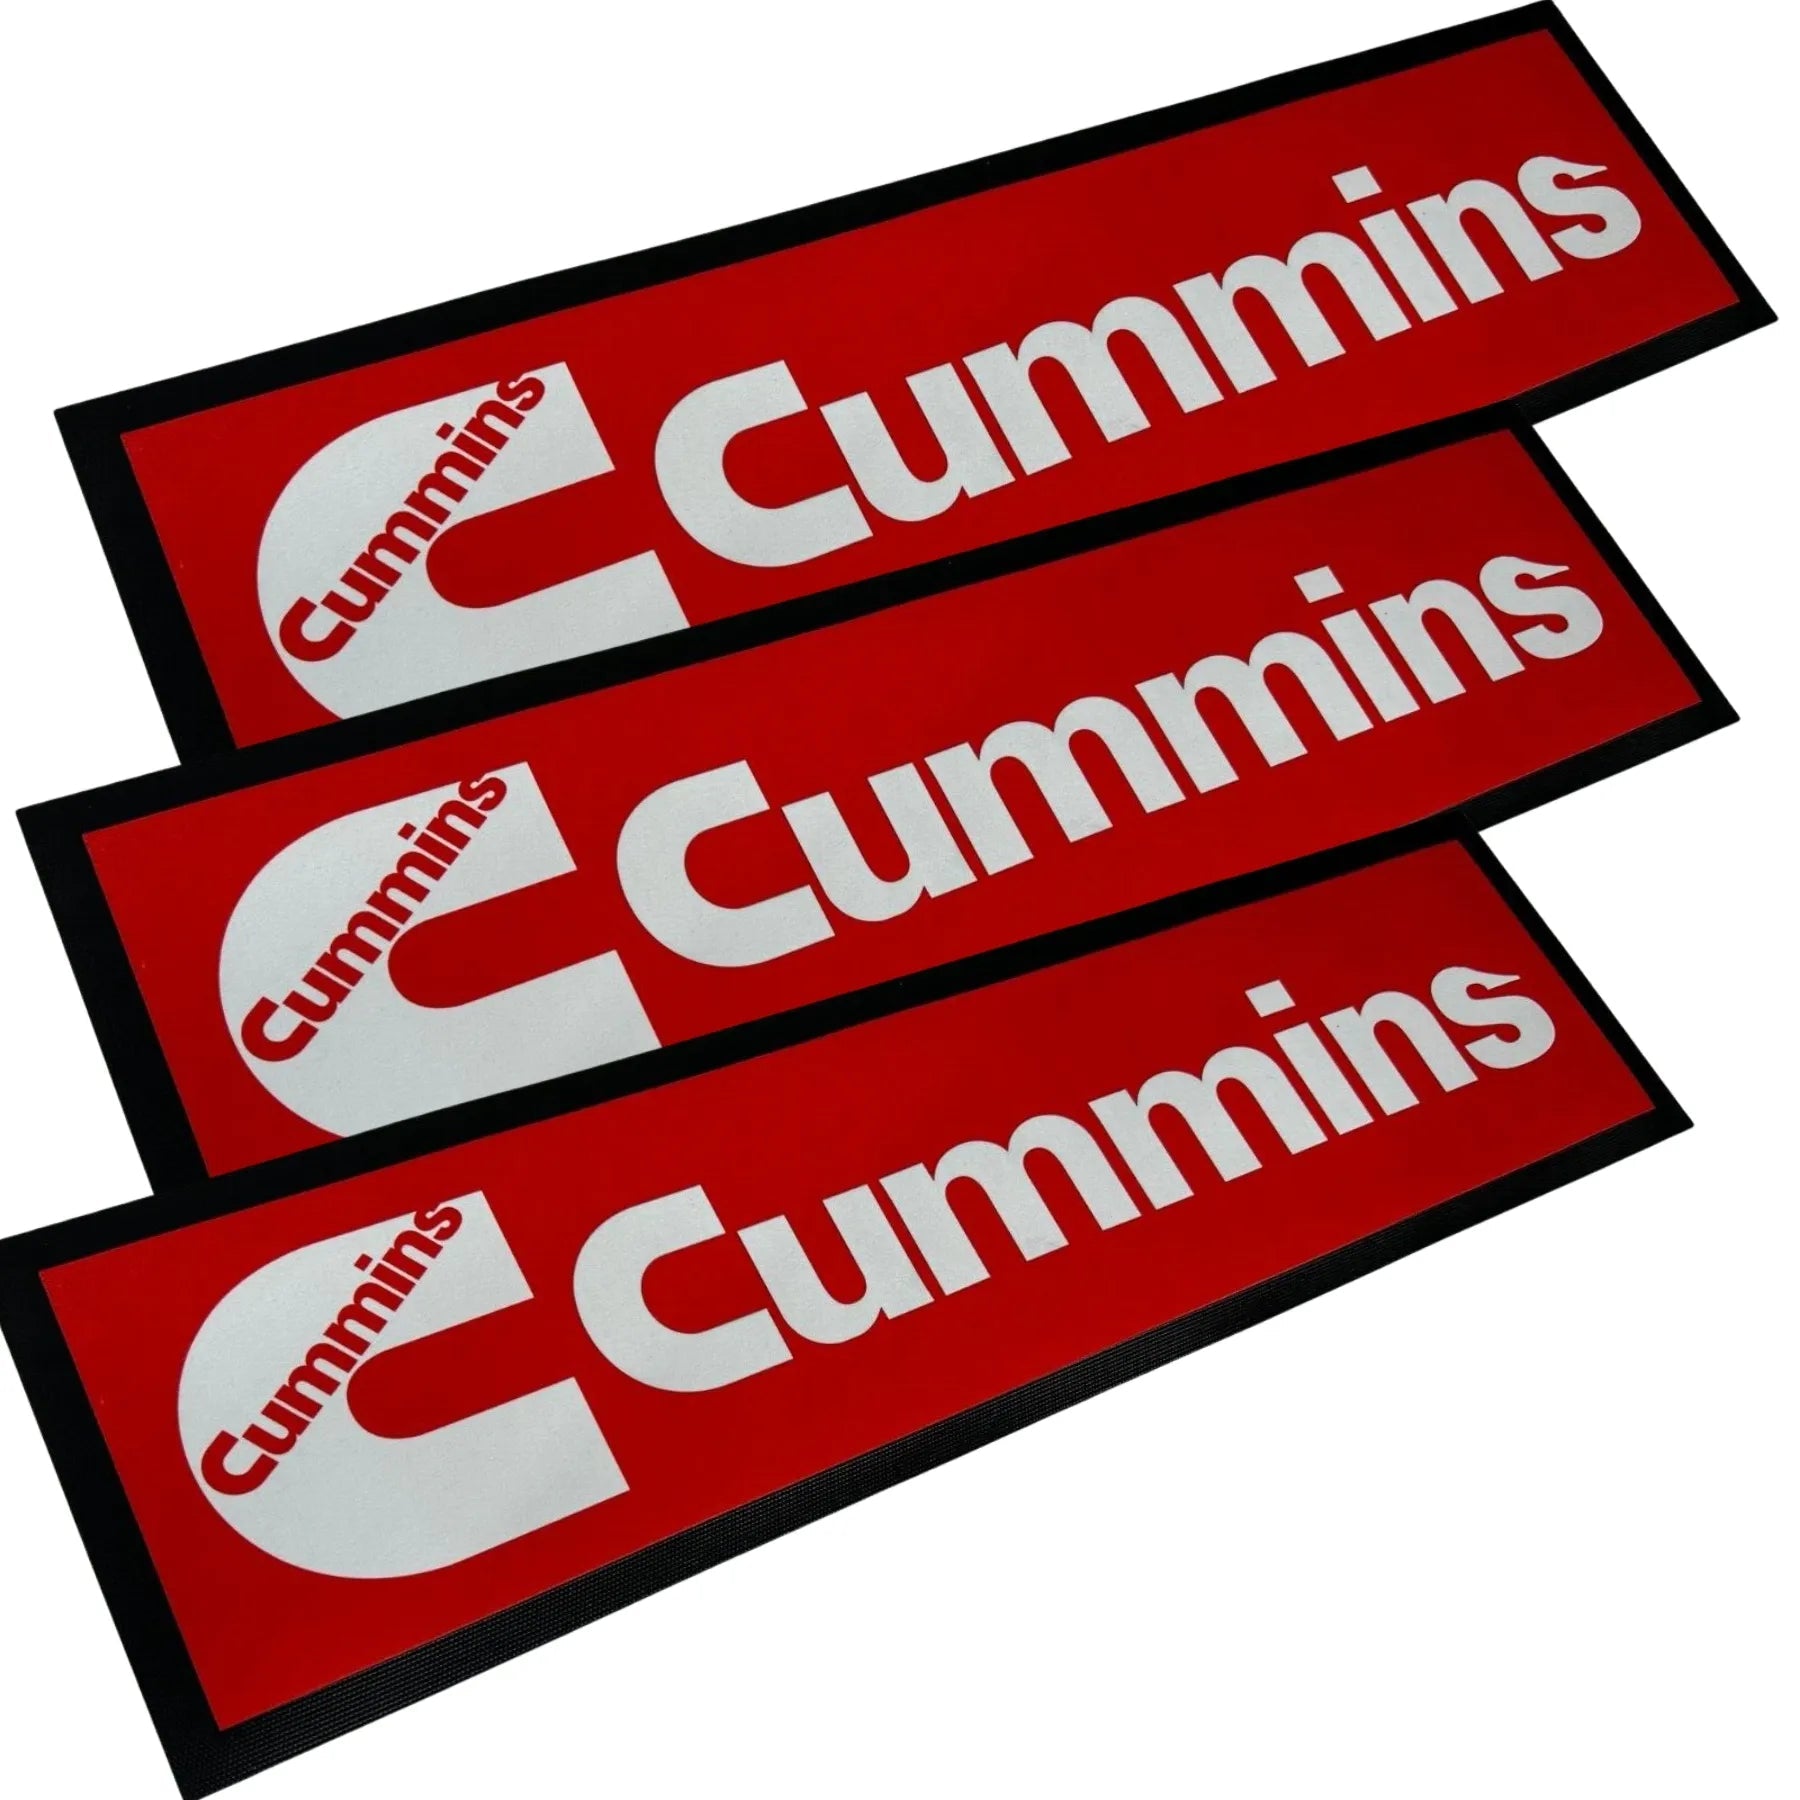 Cummins Red Premium Rubber-Backed Bar Mat Runner - KING CAVE